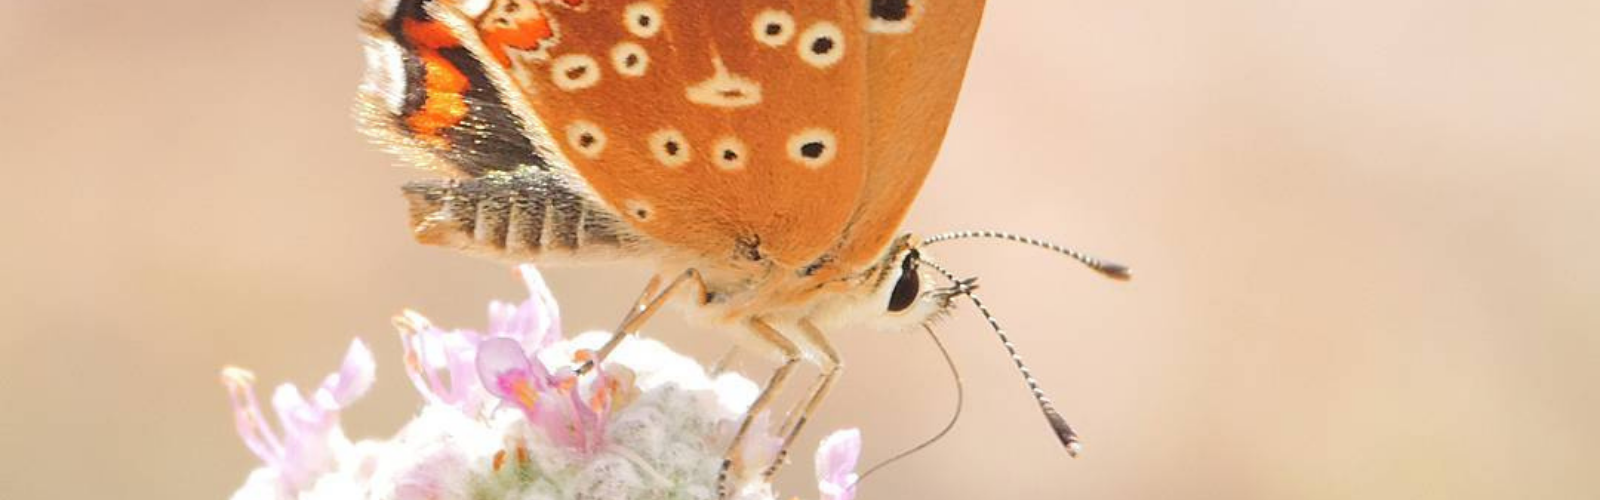 La UMU describe una nueva especie de mariposa desconocida y añade 250 especies al catálogo de biodiversidad de la Región de Murcia